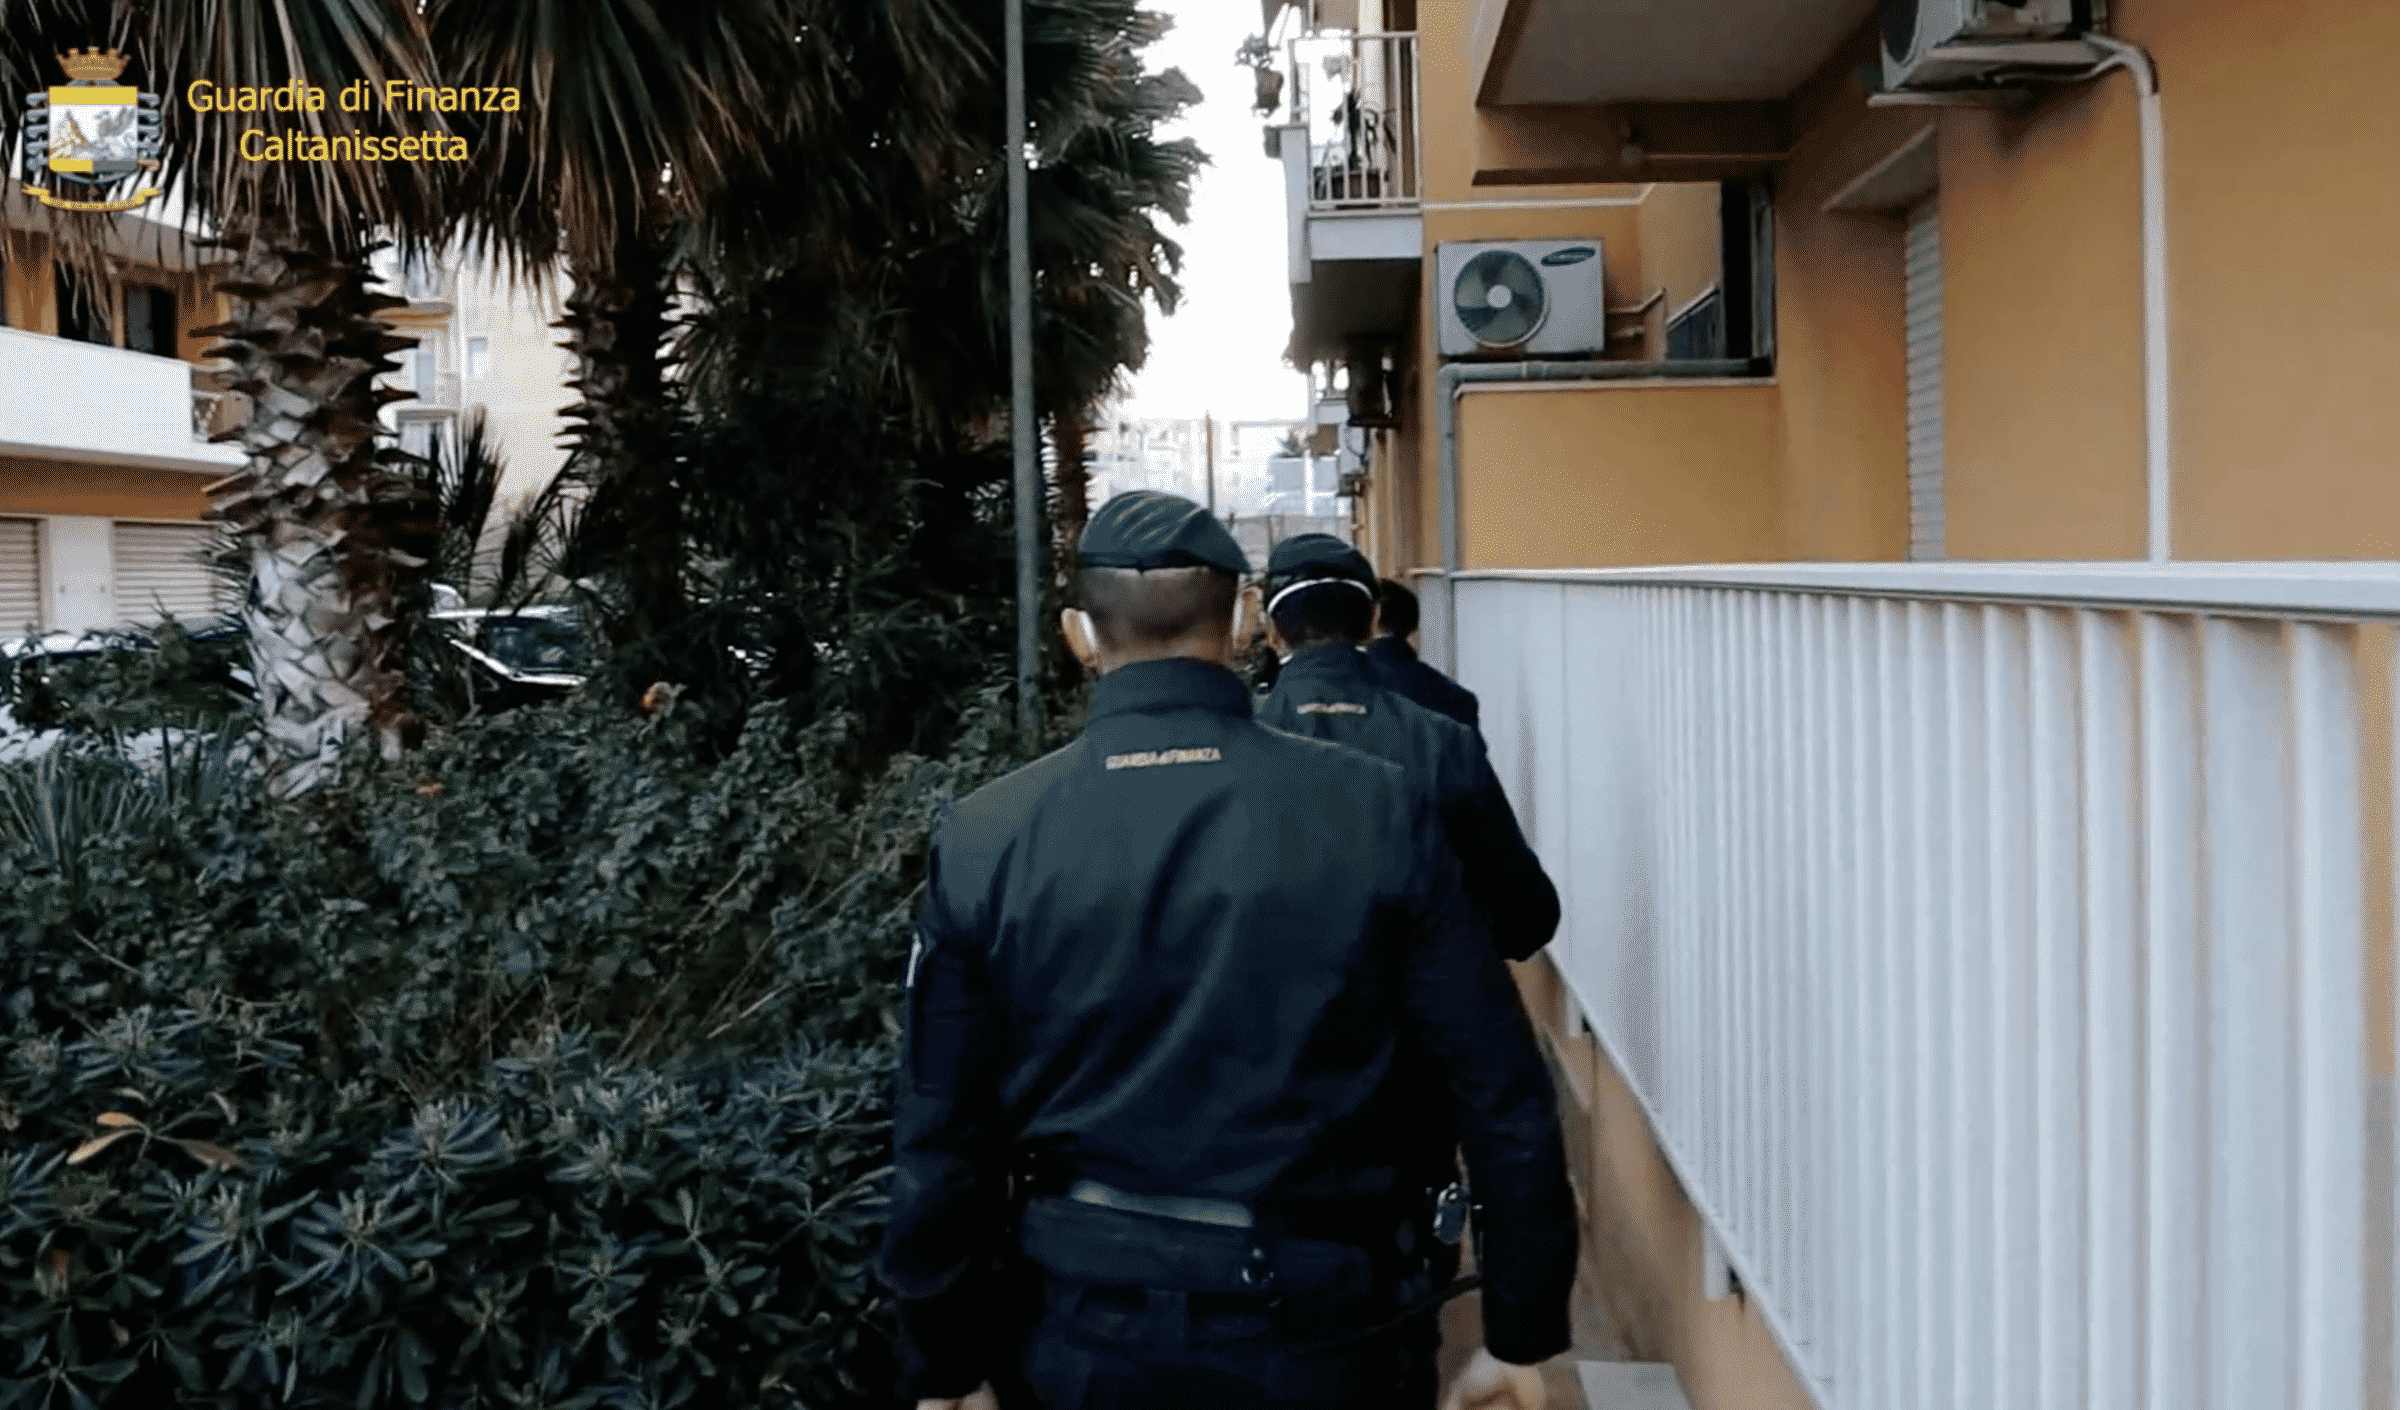 Bancarotta fraudolenta e autoriciclaggio: 8 arresti, coinvolti due catanesi – IL VIDEO